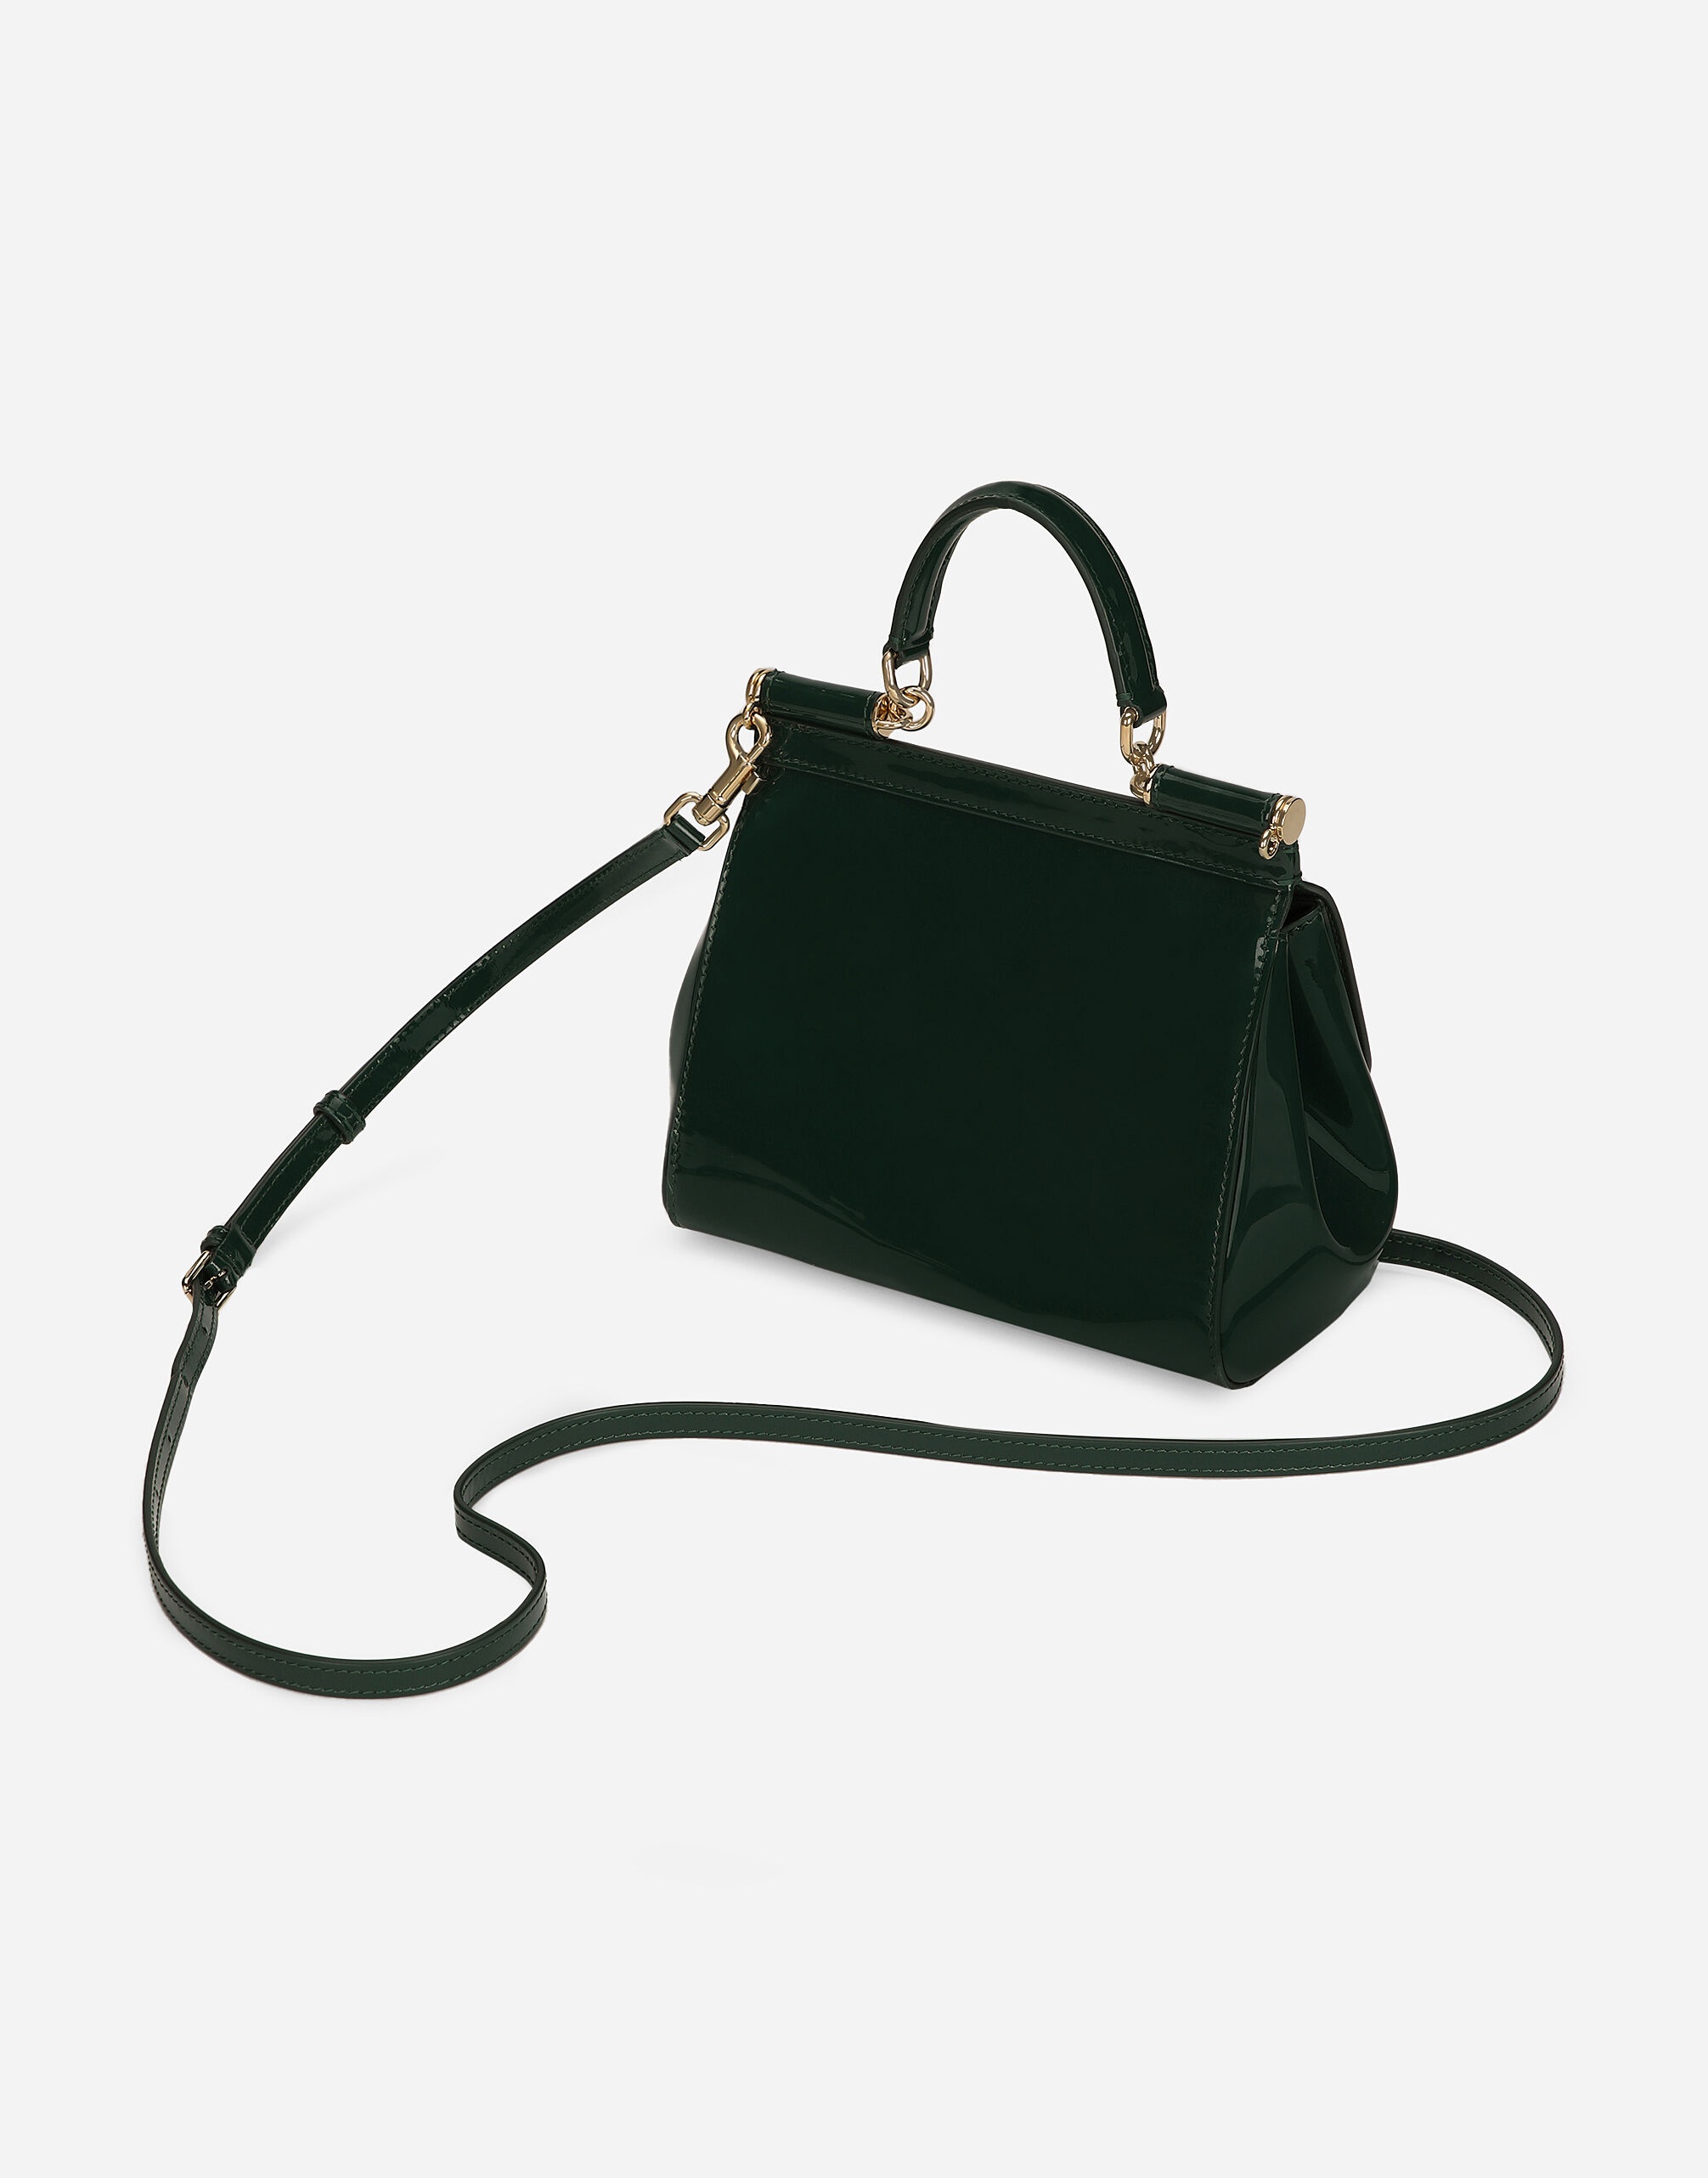 Medium Sicily handbag - 7